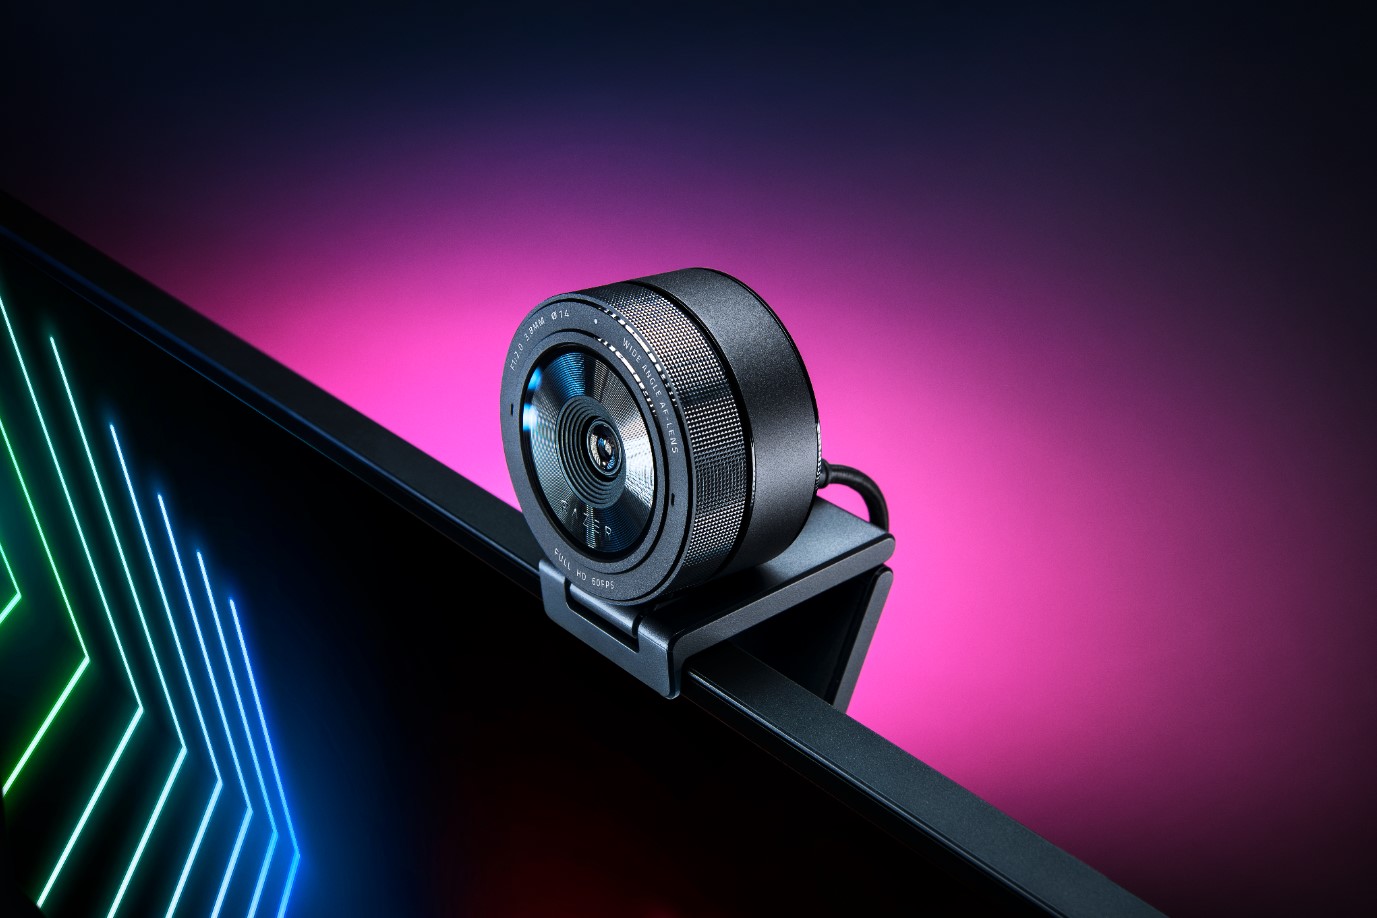 Webcam Razer Kiyo Pro siap untuk kondisi cahaya apapun